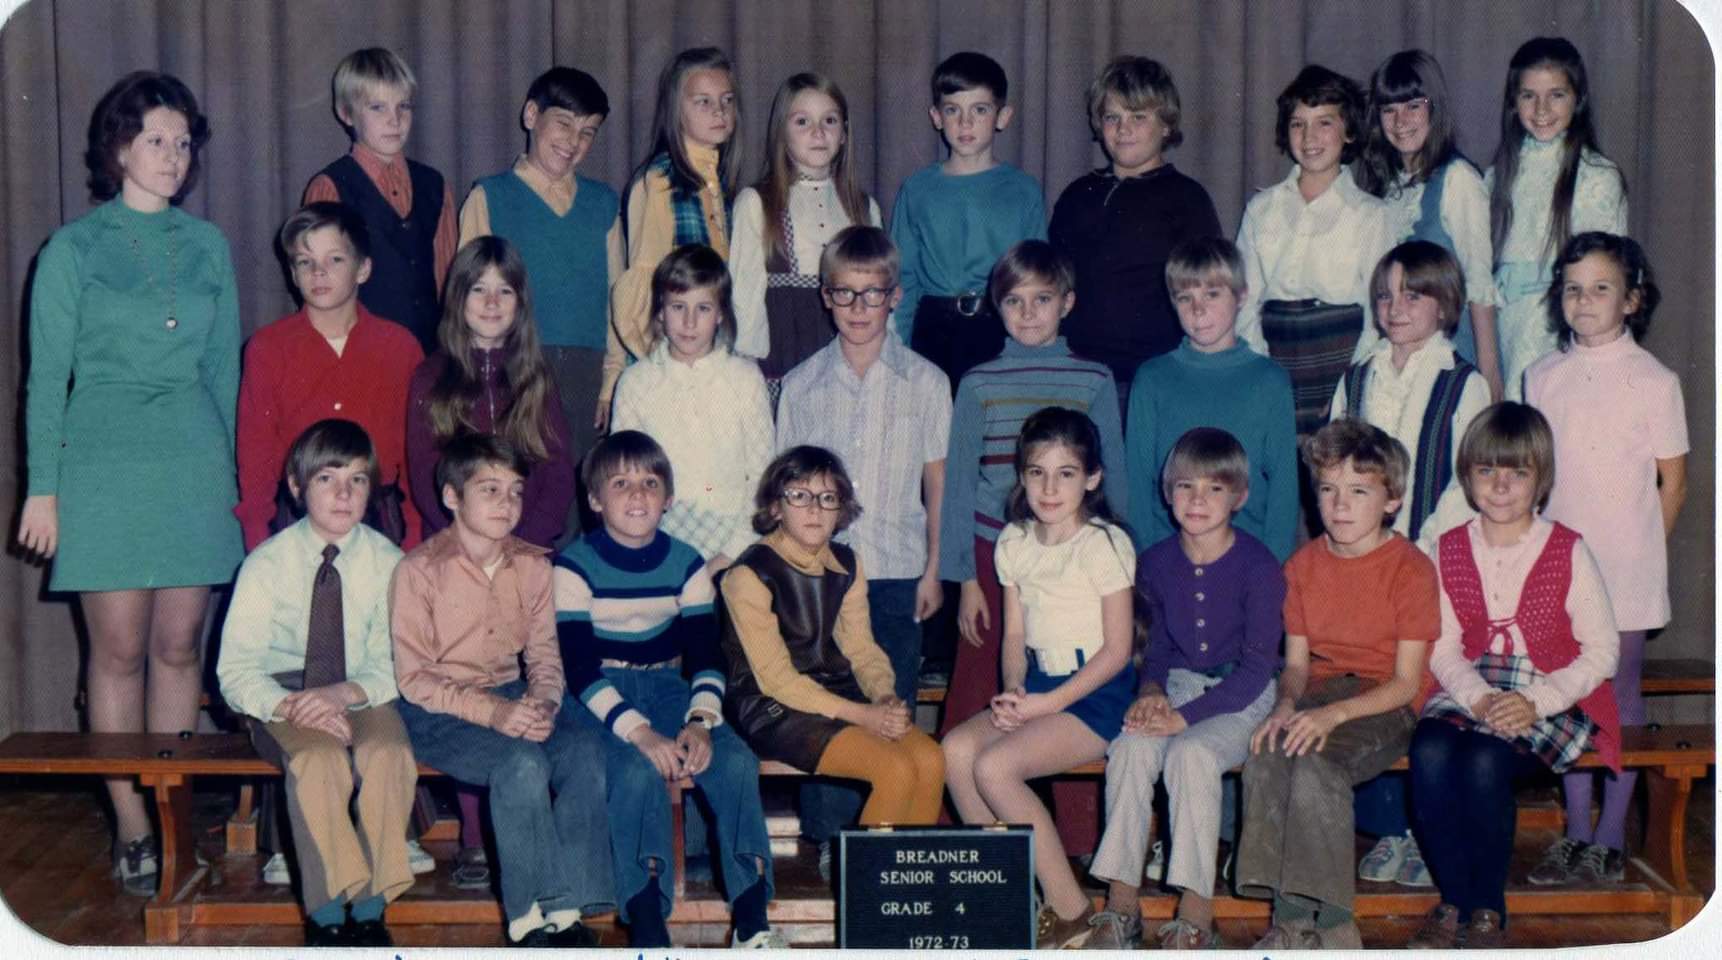 1973 Grade 4